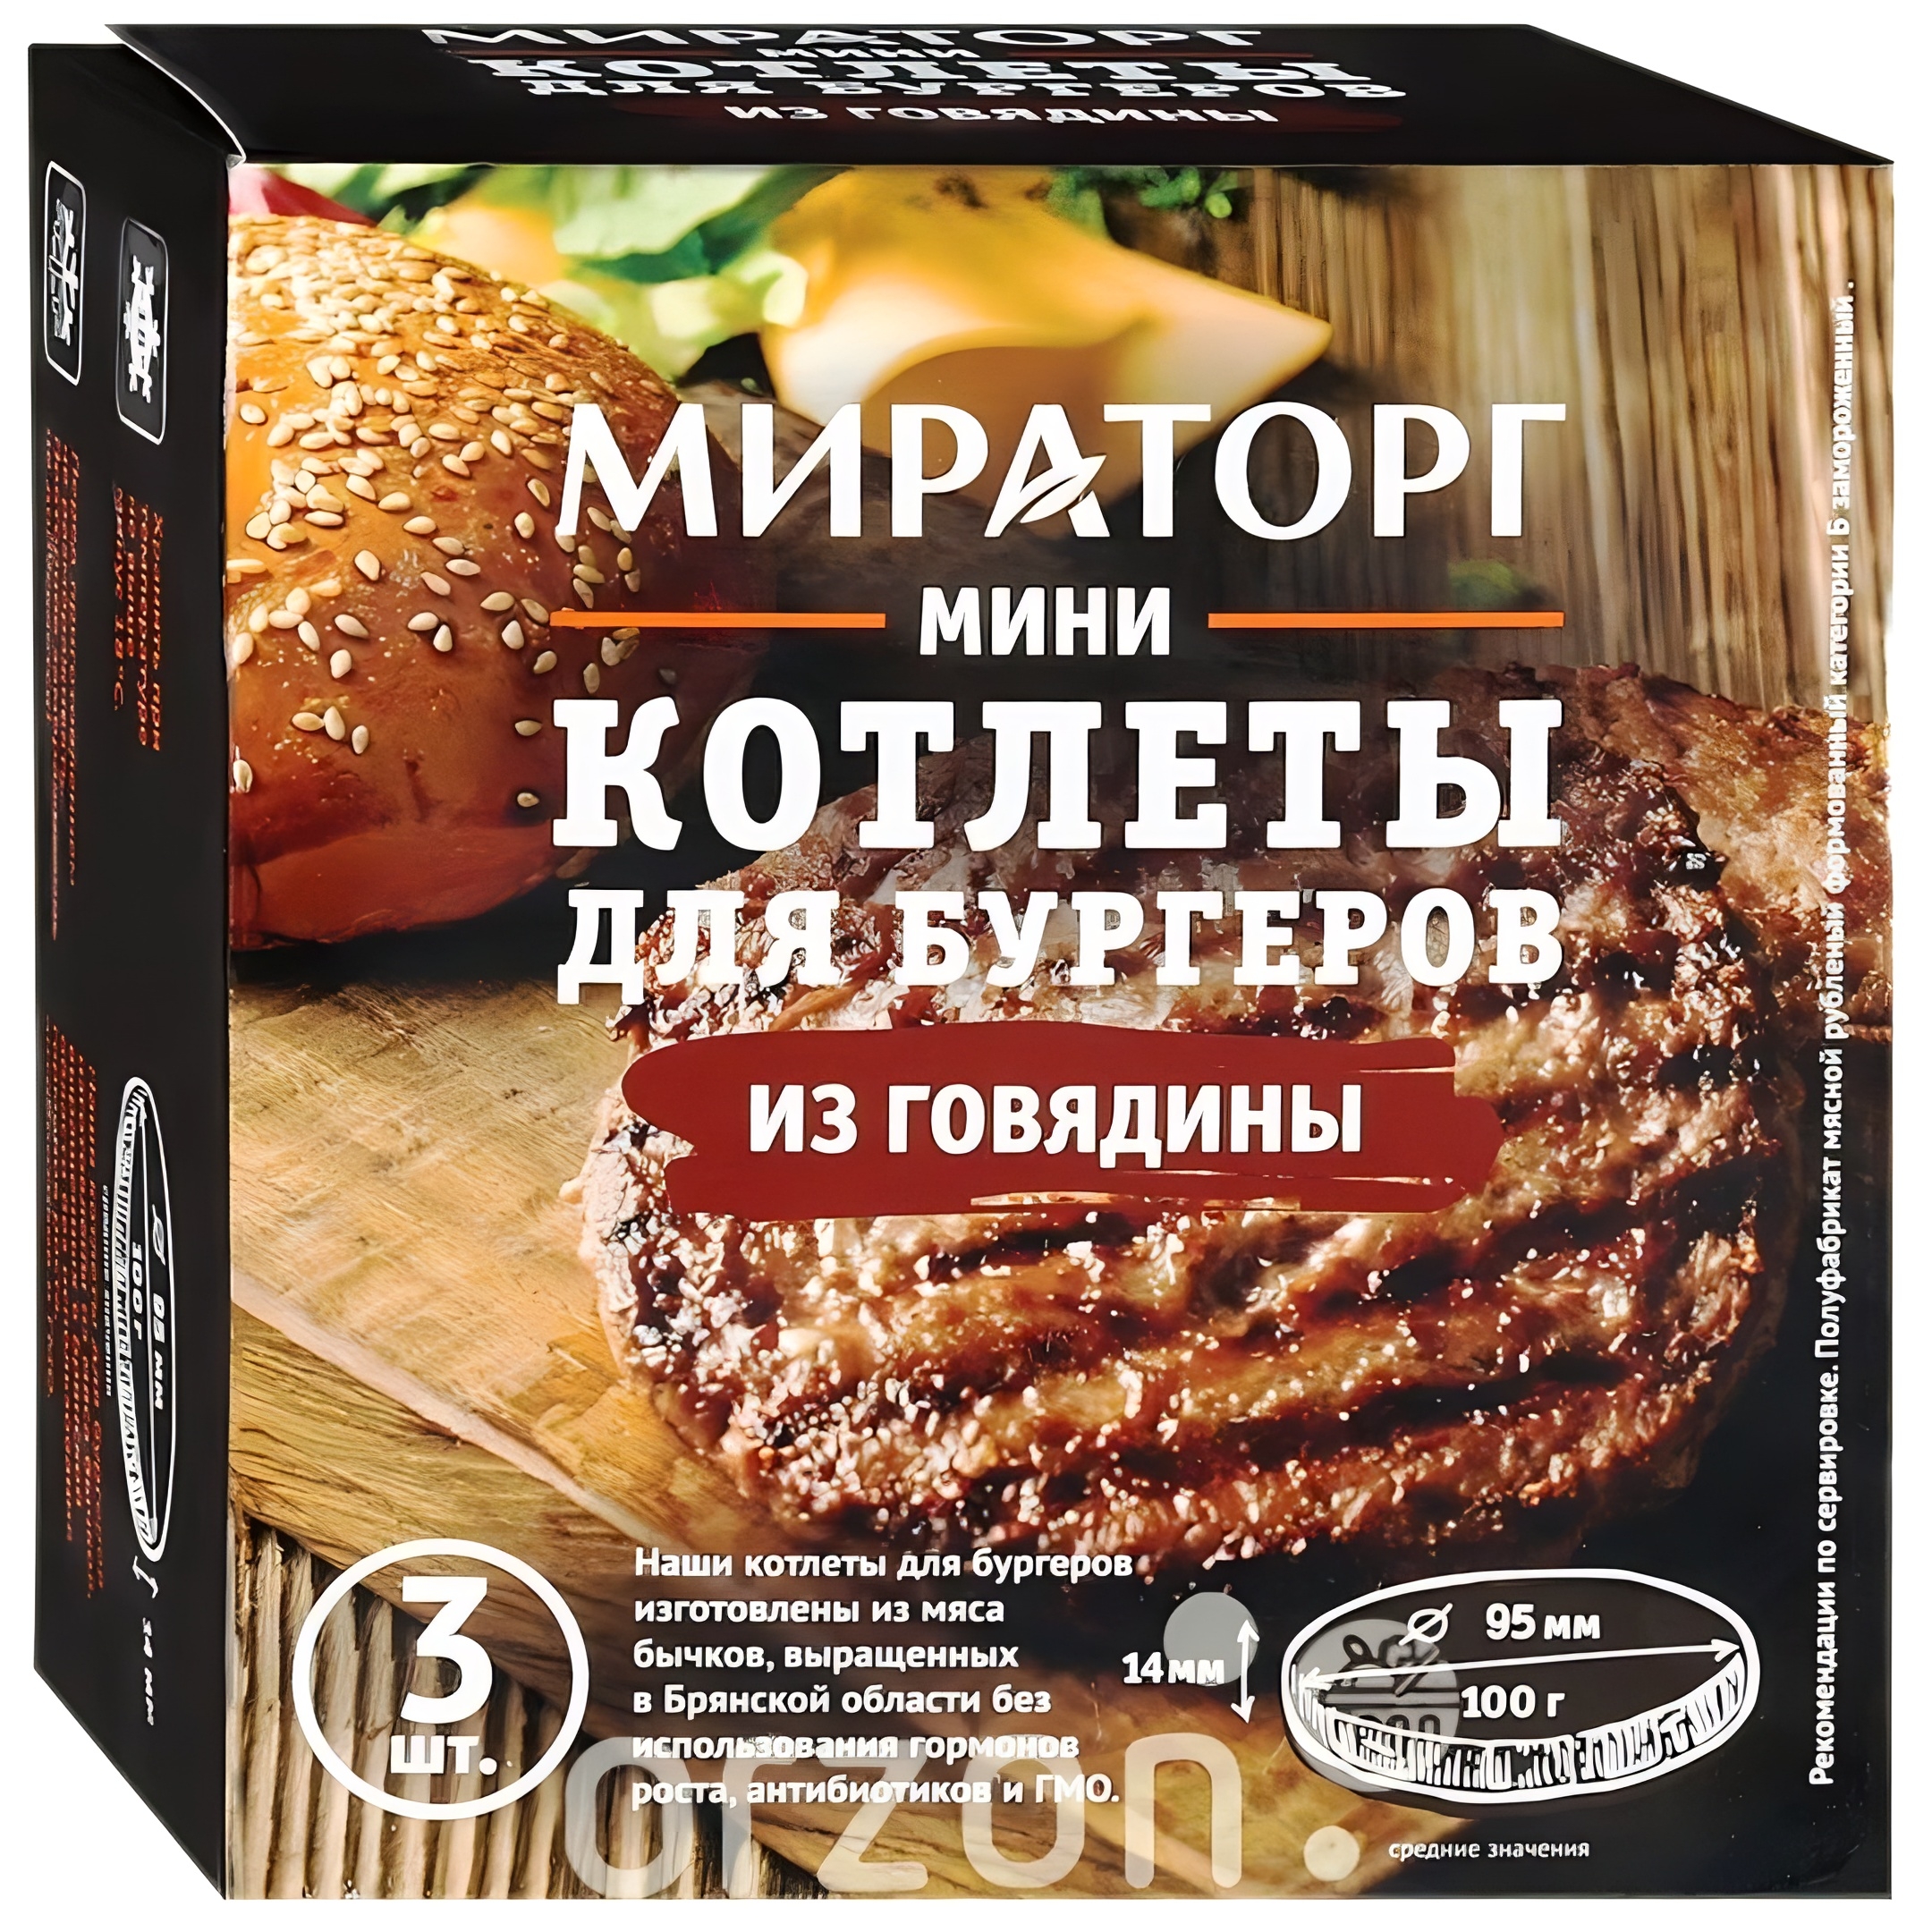 Мини Котлеты "Мираторг" Для бургеров из говядины (100 гр х 3 штуки) 300 гр